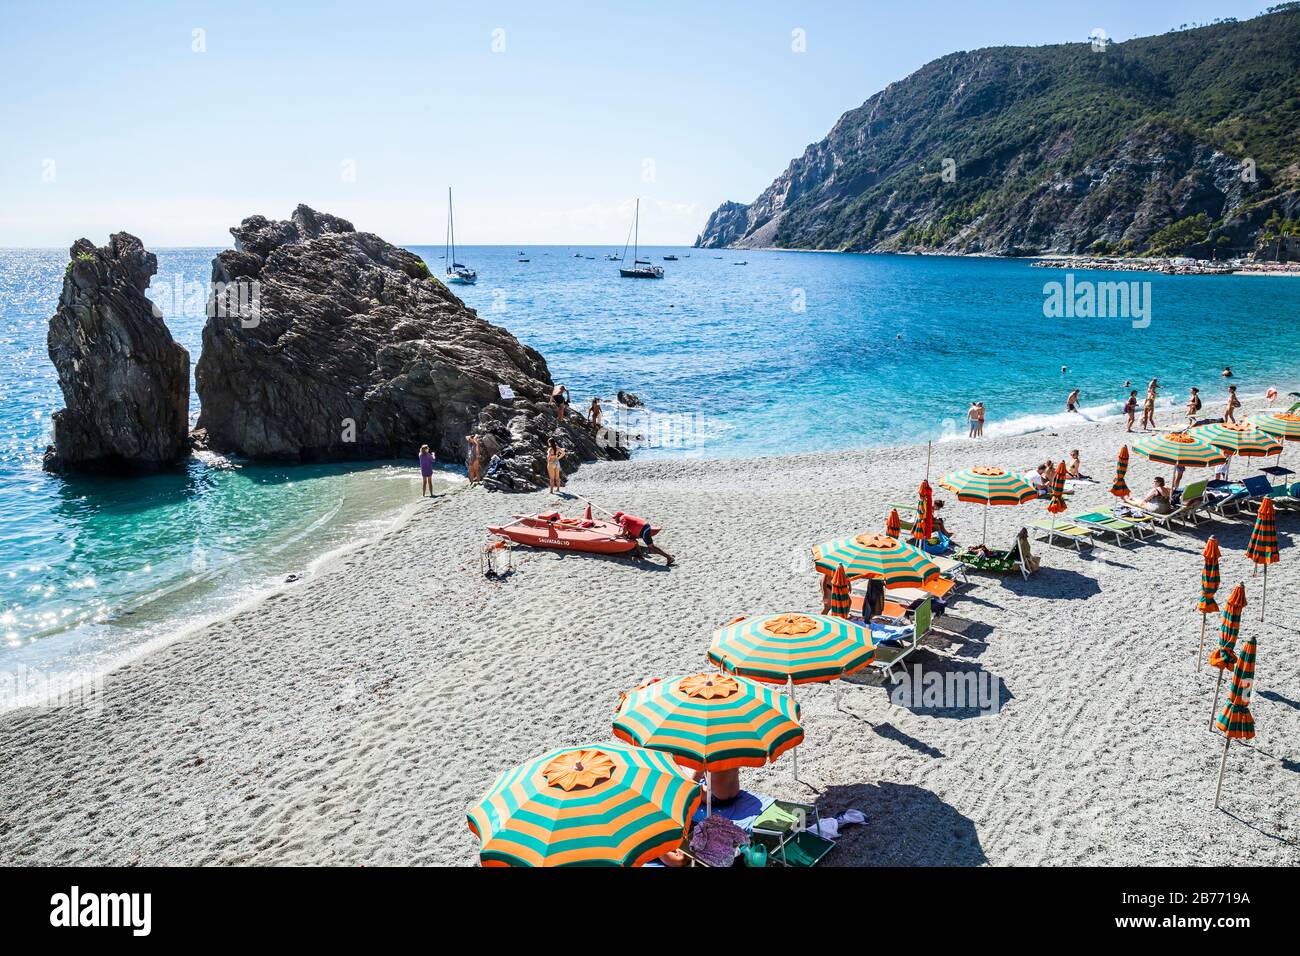 A beach area in Monterosso al Mare, Italy. Stock Photo